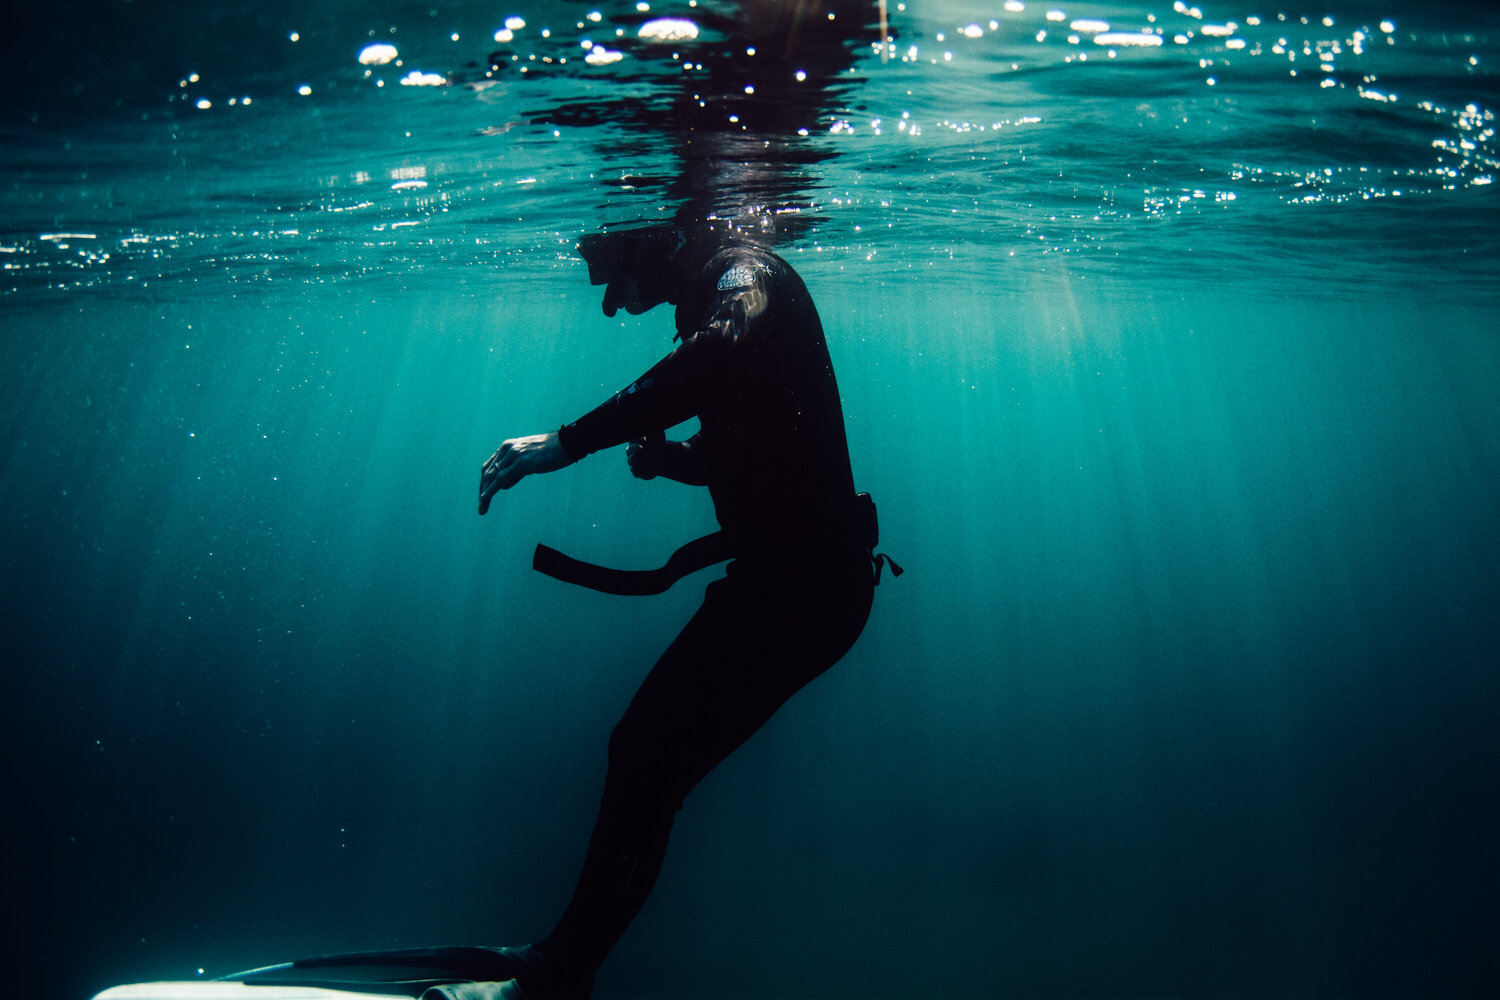 Krista Espino corse corsica photograph photographe photographer europe underwater freedive dive diving explore adventure ajaccio corse-du-sud sea mediterranean island france french_-14.jpg